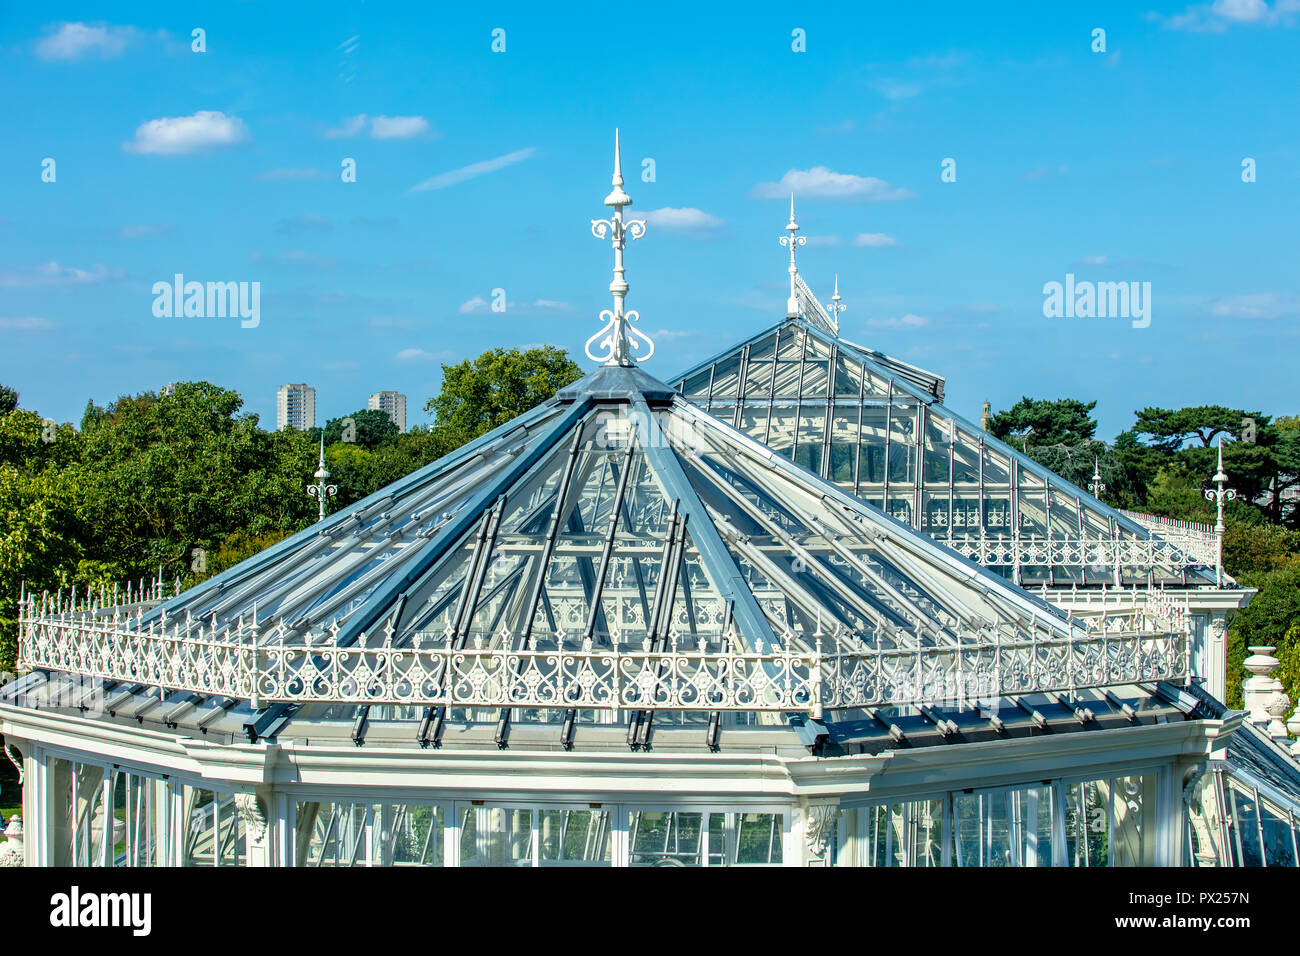 Richmond, Londres - 1 Sept 2018 : Europe House architecture à couper le souffle des détails après la réouverture à Kew Royal Botanic Gardens Banque D'Images